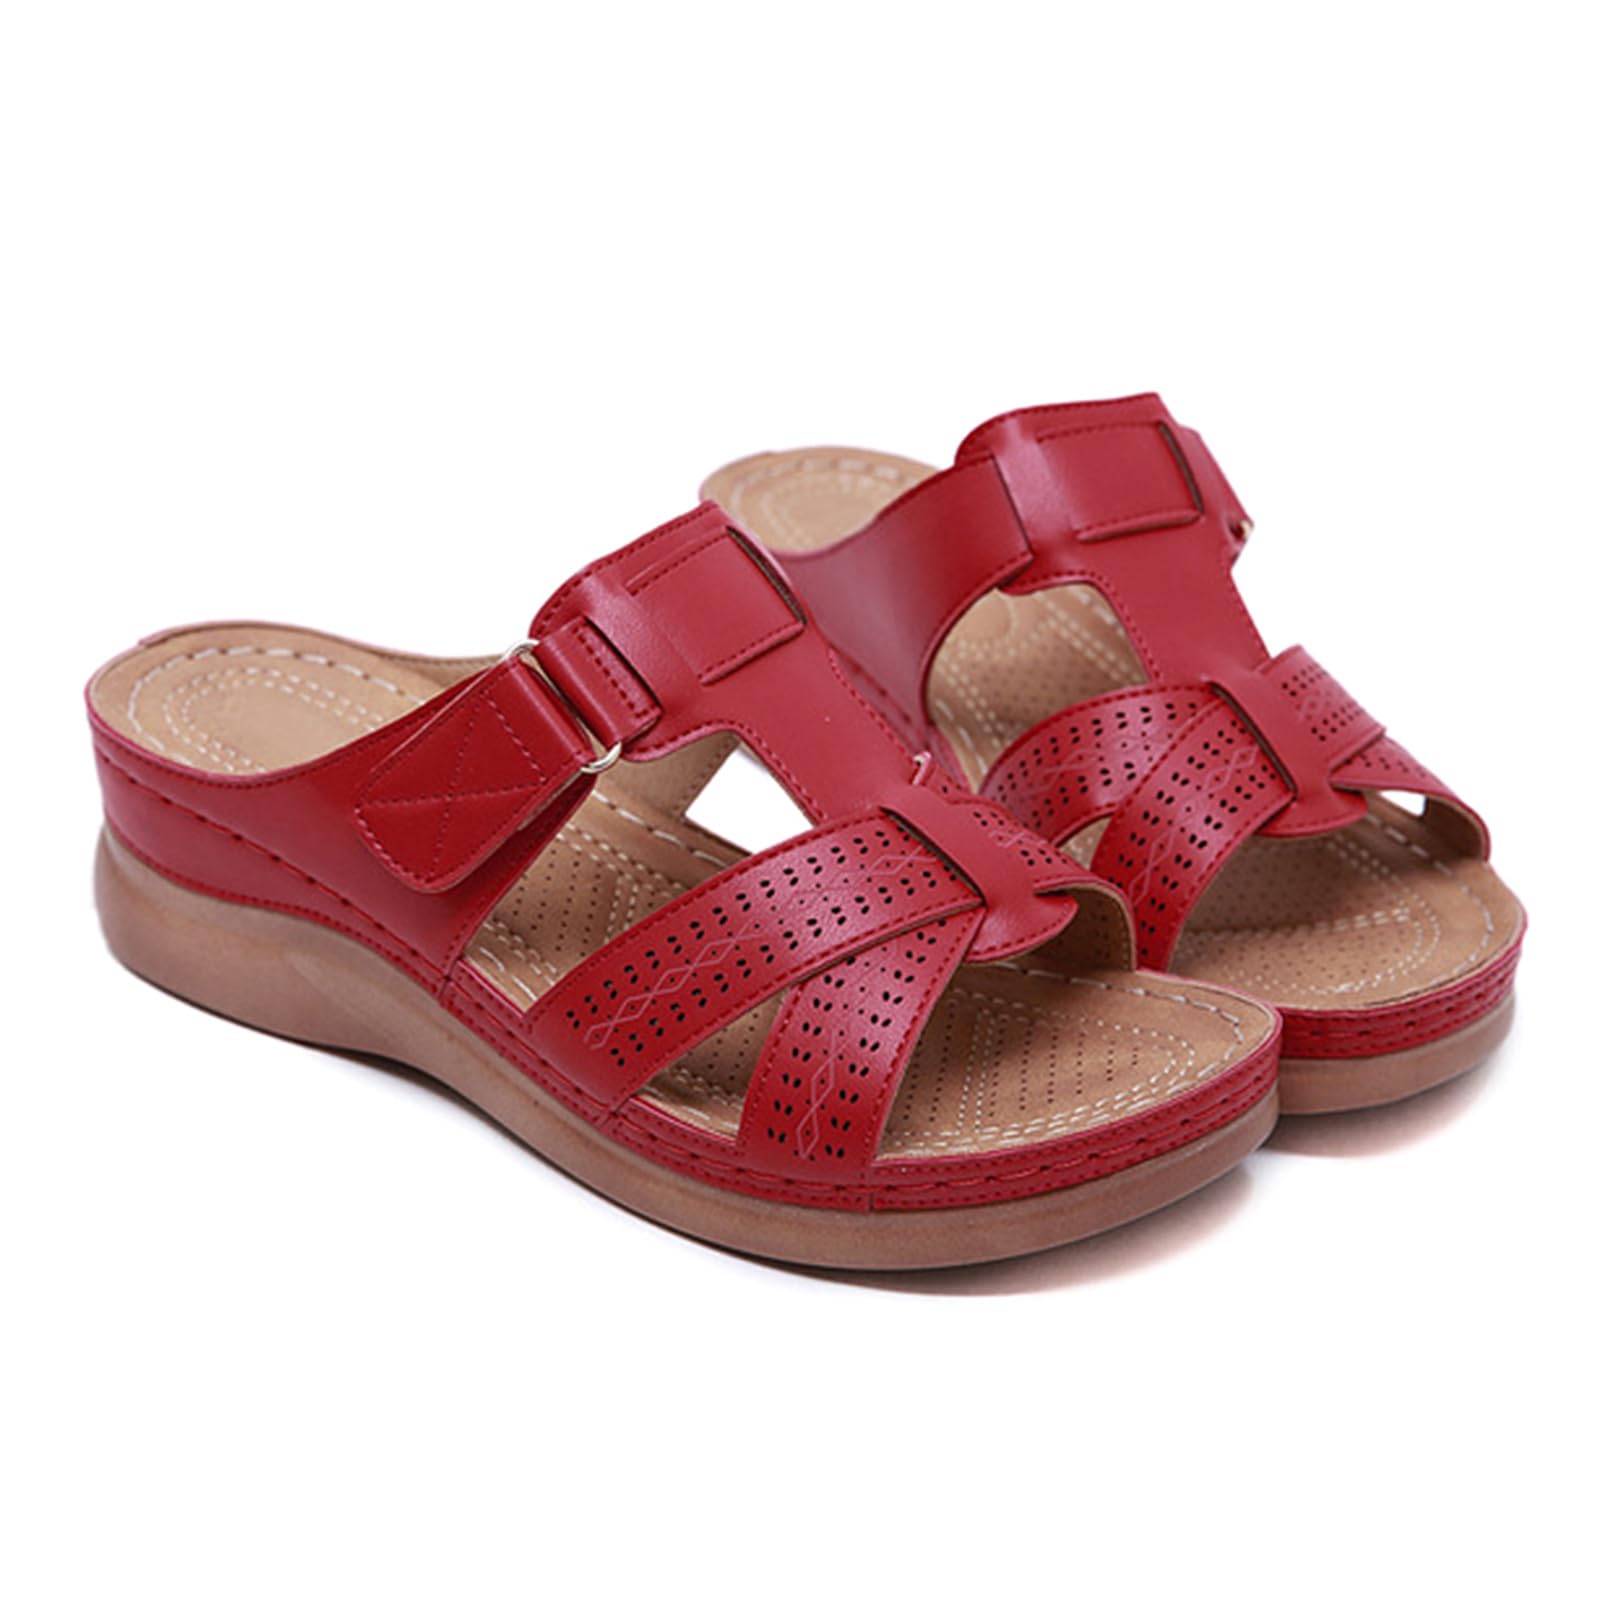 Lanbowo Damen Premium Orthopädisch Offene Zehen Sandalen Vintage rutschfeste Atmungsaktiv für den Sommer - Rot, 41